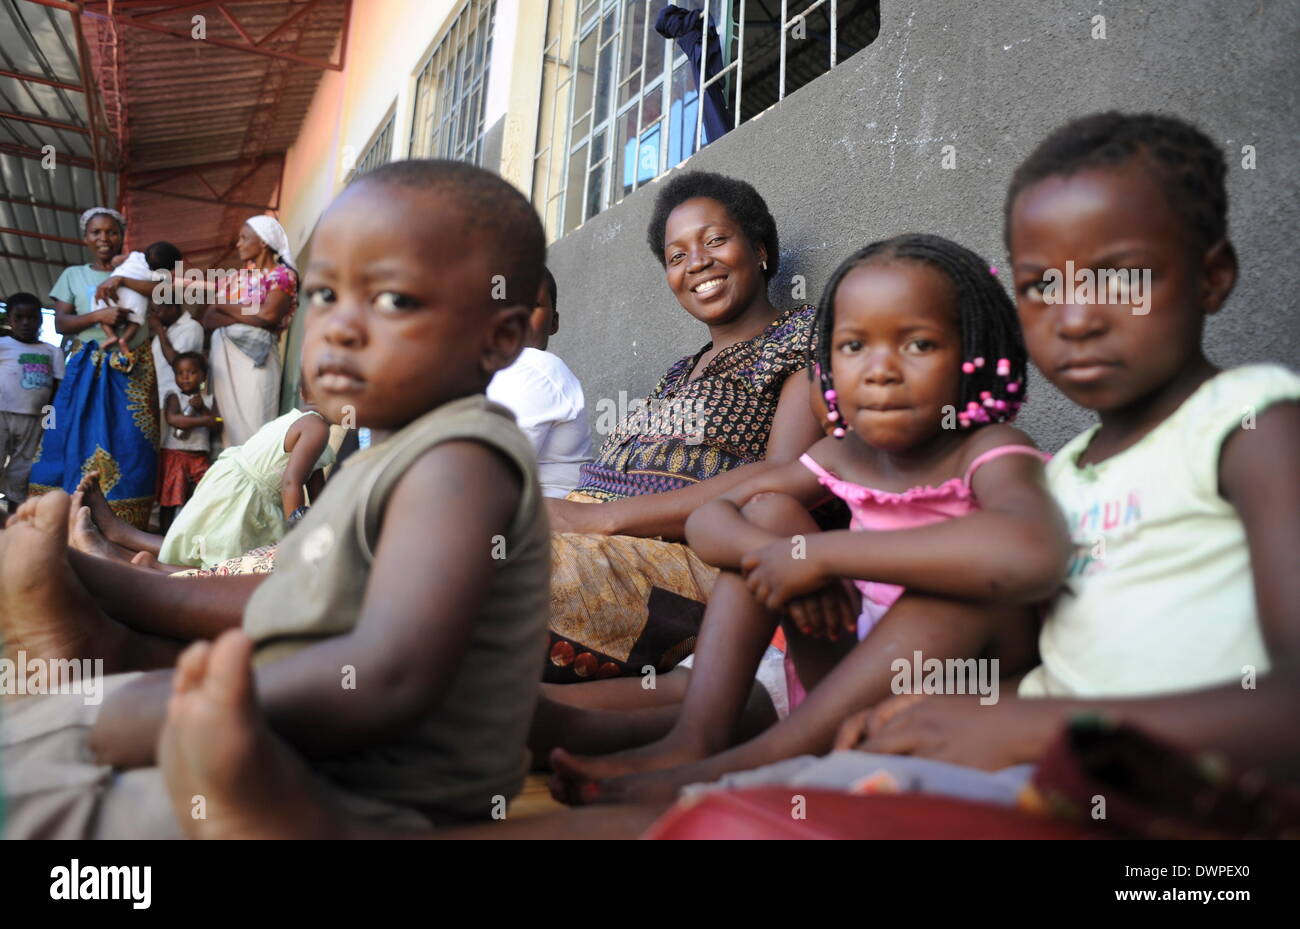 Maputo, Mozambico. 28 Feb, 2013. Katarina si siede in un riparo di emergenza alla periferia di Maputo, Mozambico, 28 febbraio 2013. Le forti piogge nel mese di gennaio ha portato a inondazioni nella zona che ha fatto 150.000 persone senzatetto. Foto: Britta Pedersen/dpa/Alamy Live News Foto Stock